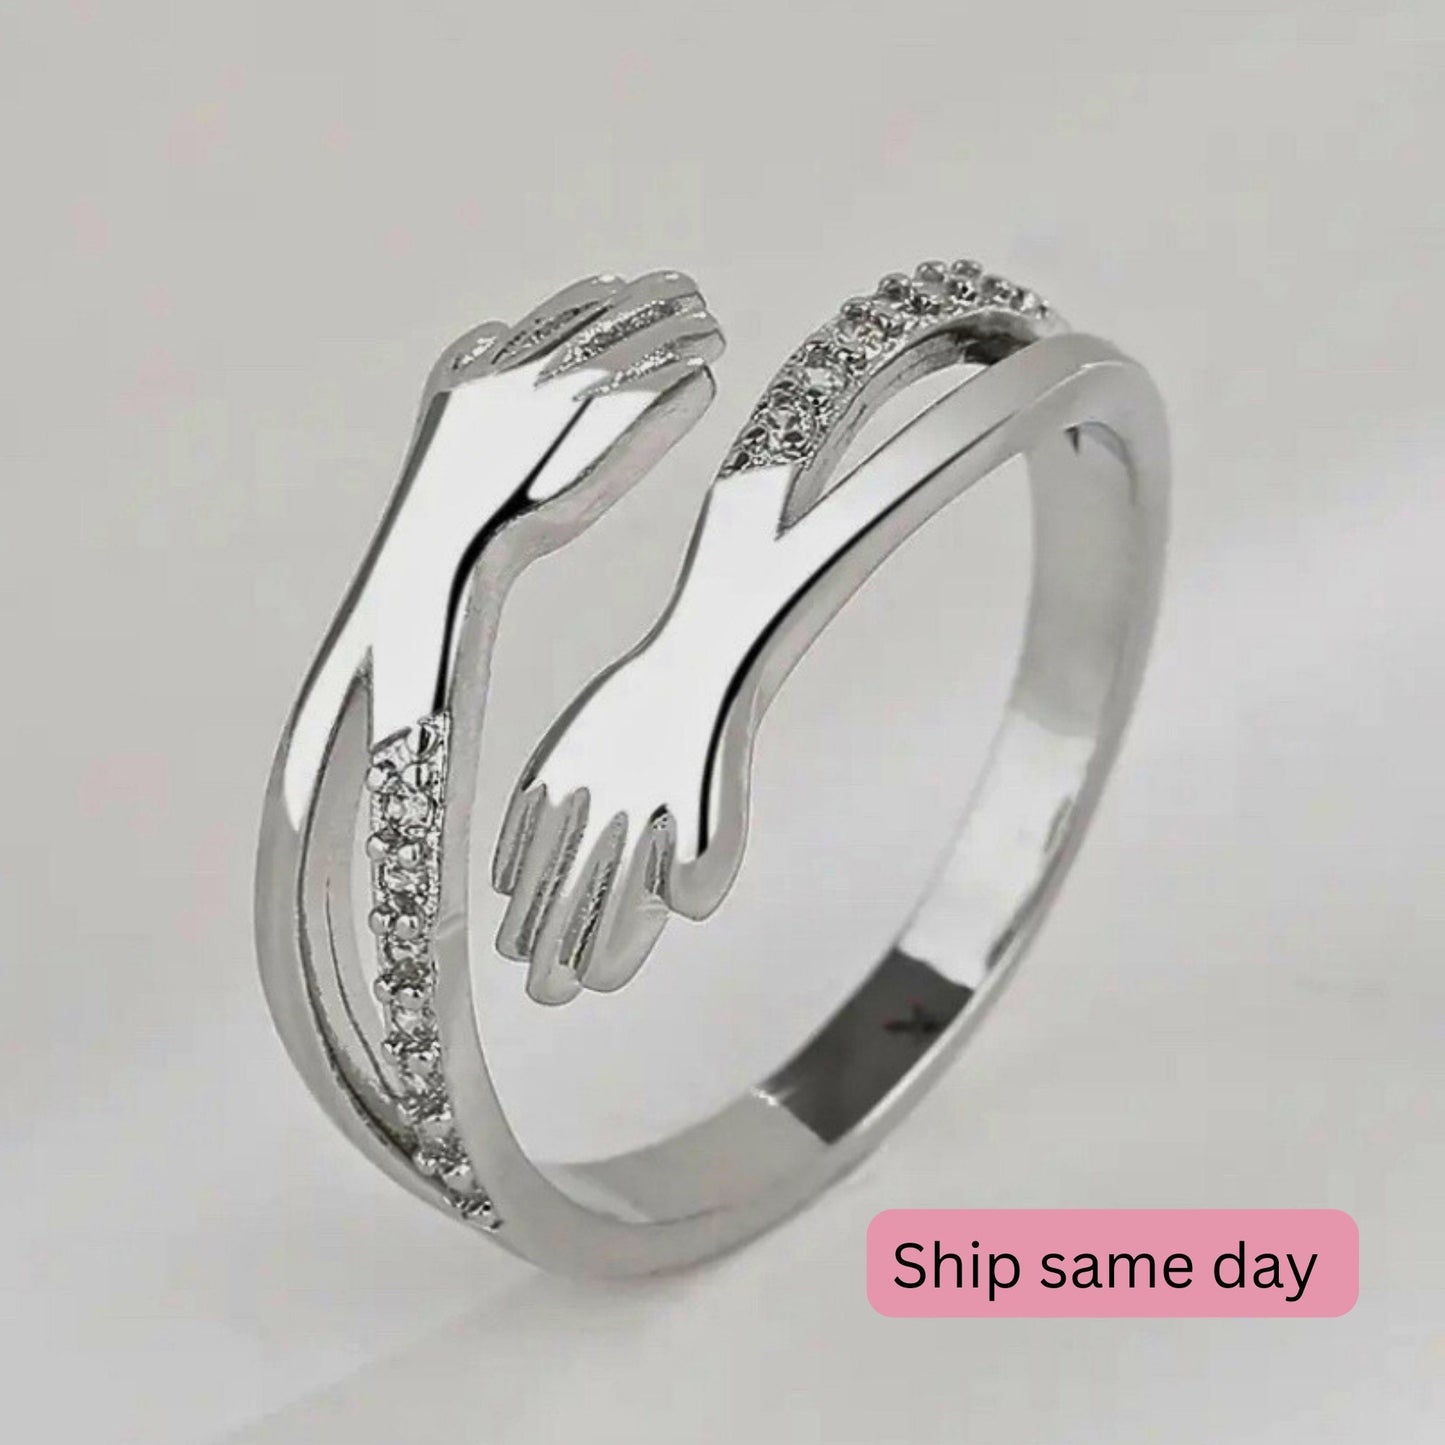 Hug ring sterling silver adjustable fidget ring Promise ring hug heart ring friendship ring promise ring hug ring for mom’s birthday gift